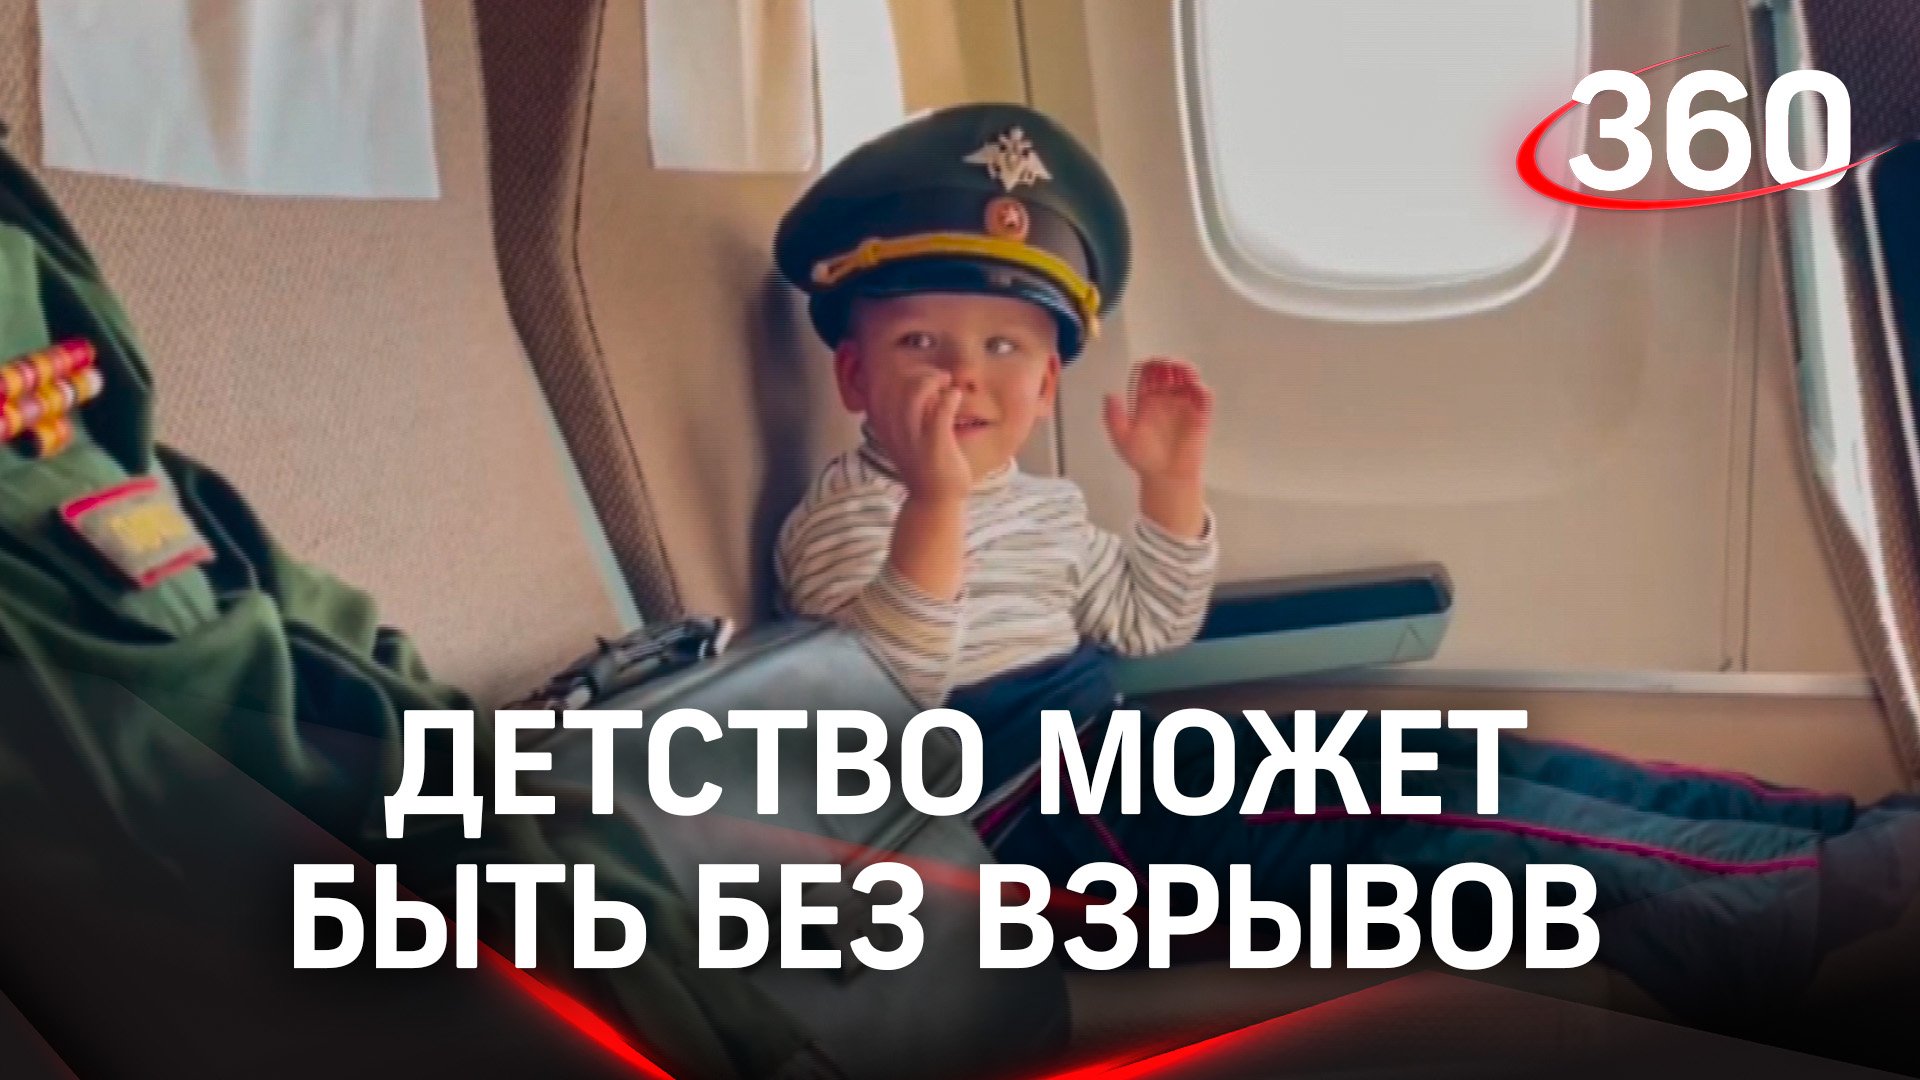 Навстречу детству без взрывов. В Подмосковье прилетел самолет с малышами из ДНР